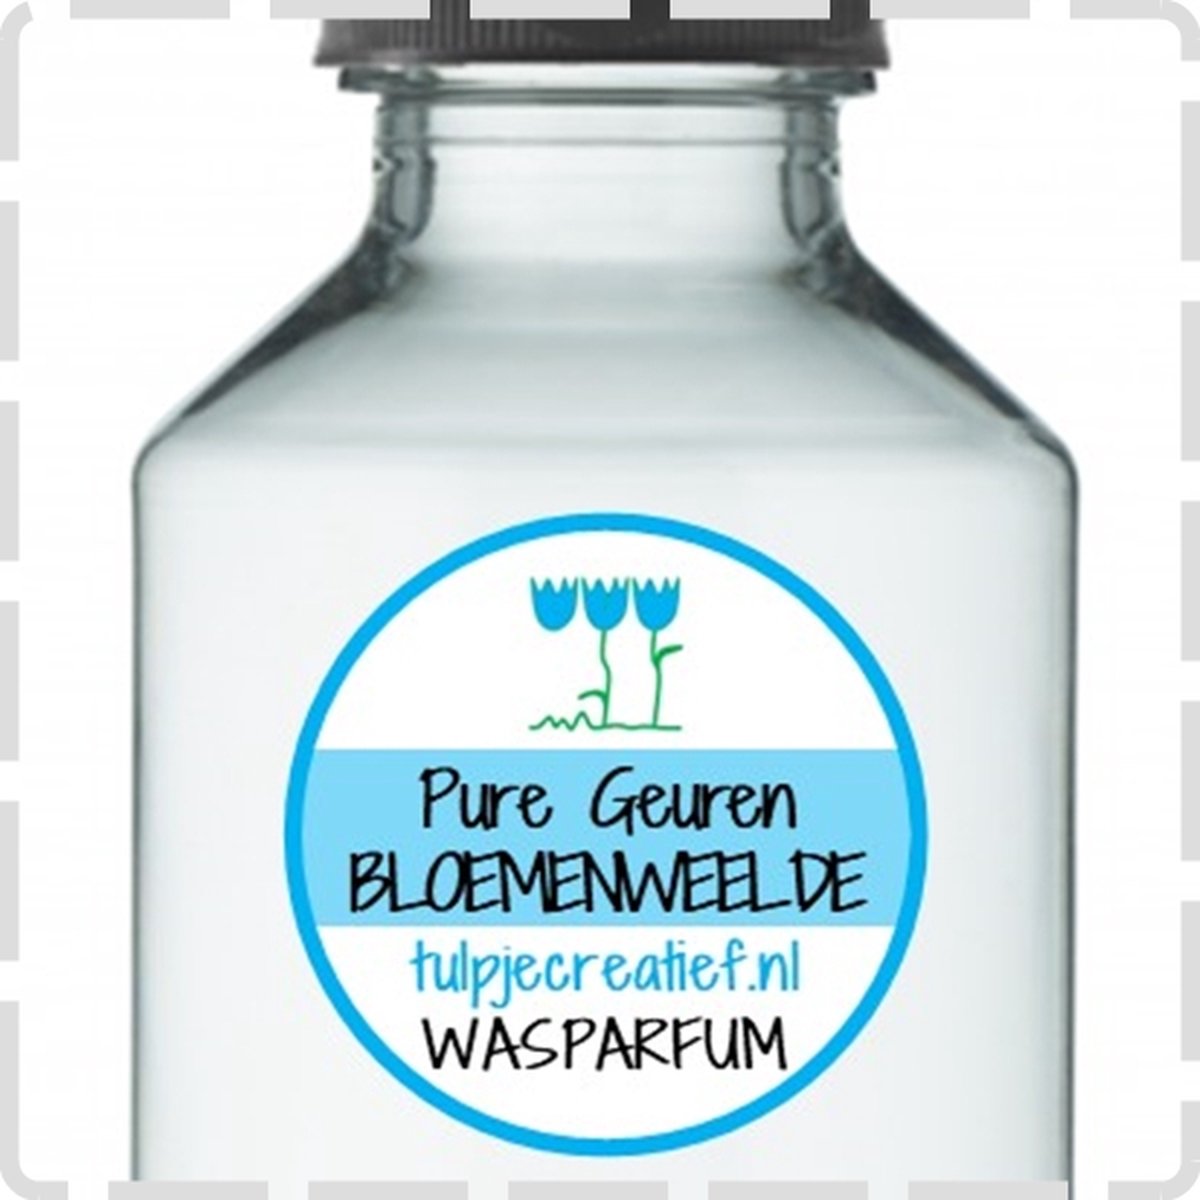 Pure Geuren - Wasparfum - Bloemenweelde - 100 ml - 20 wasbeurten